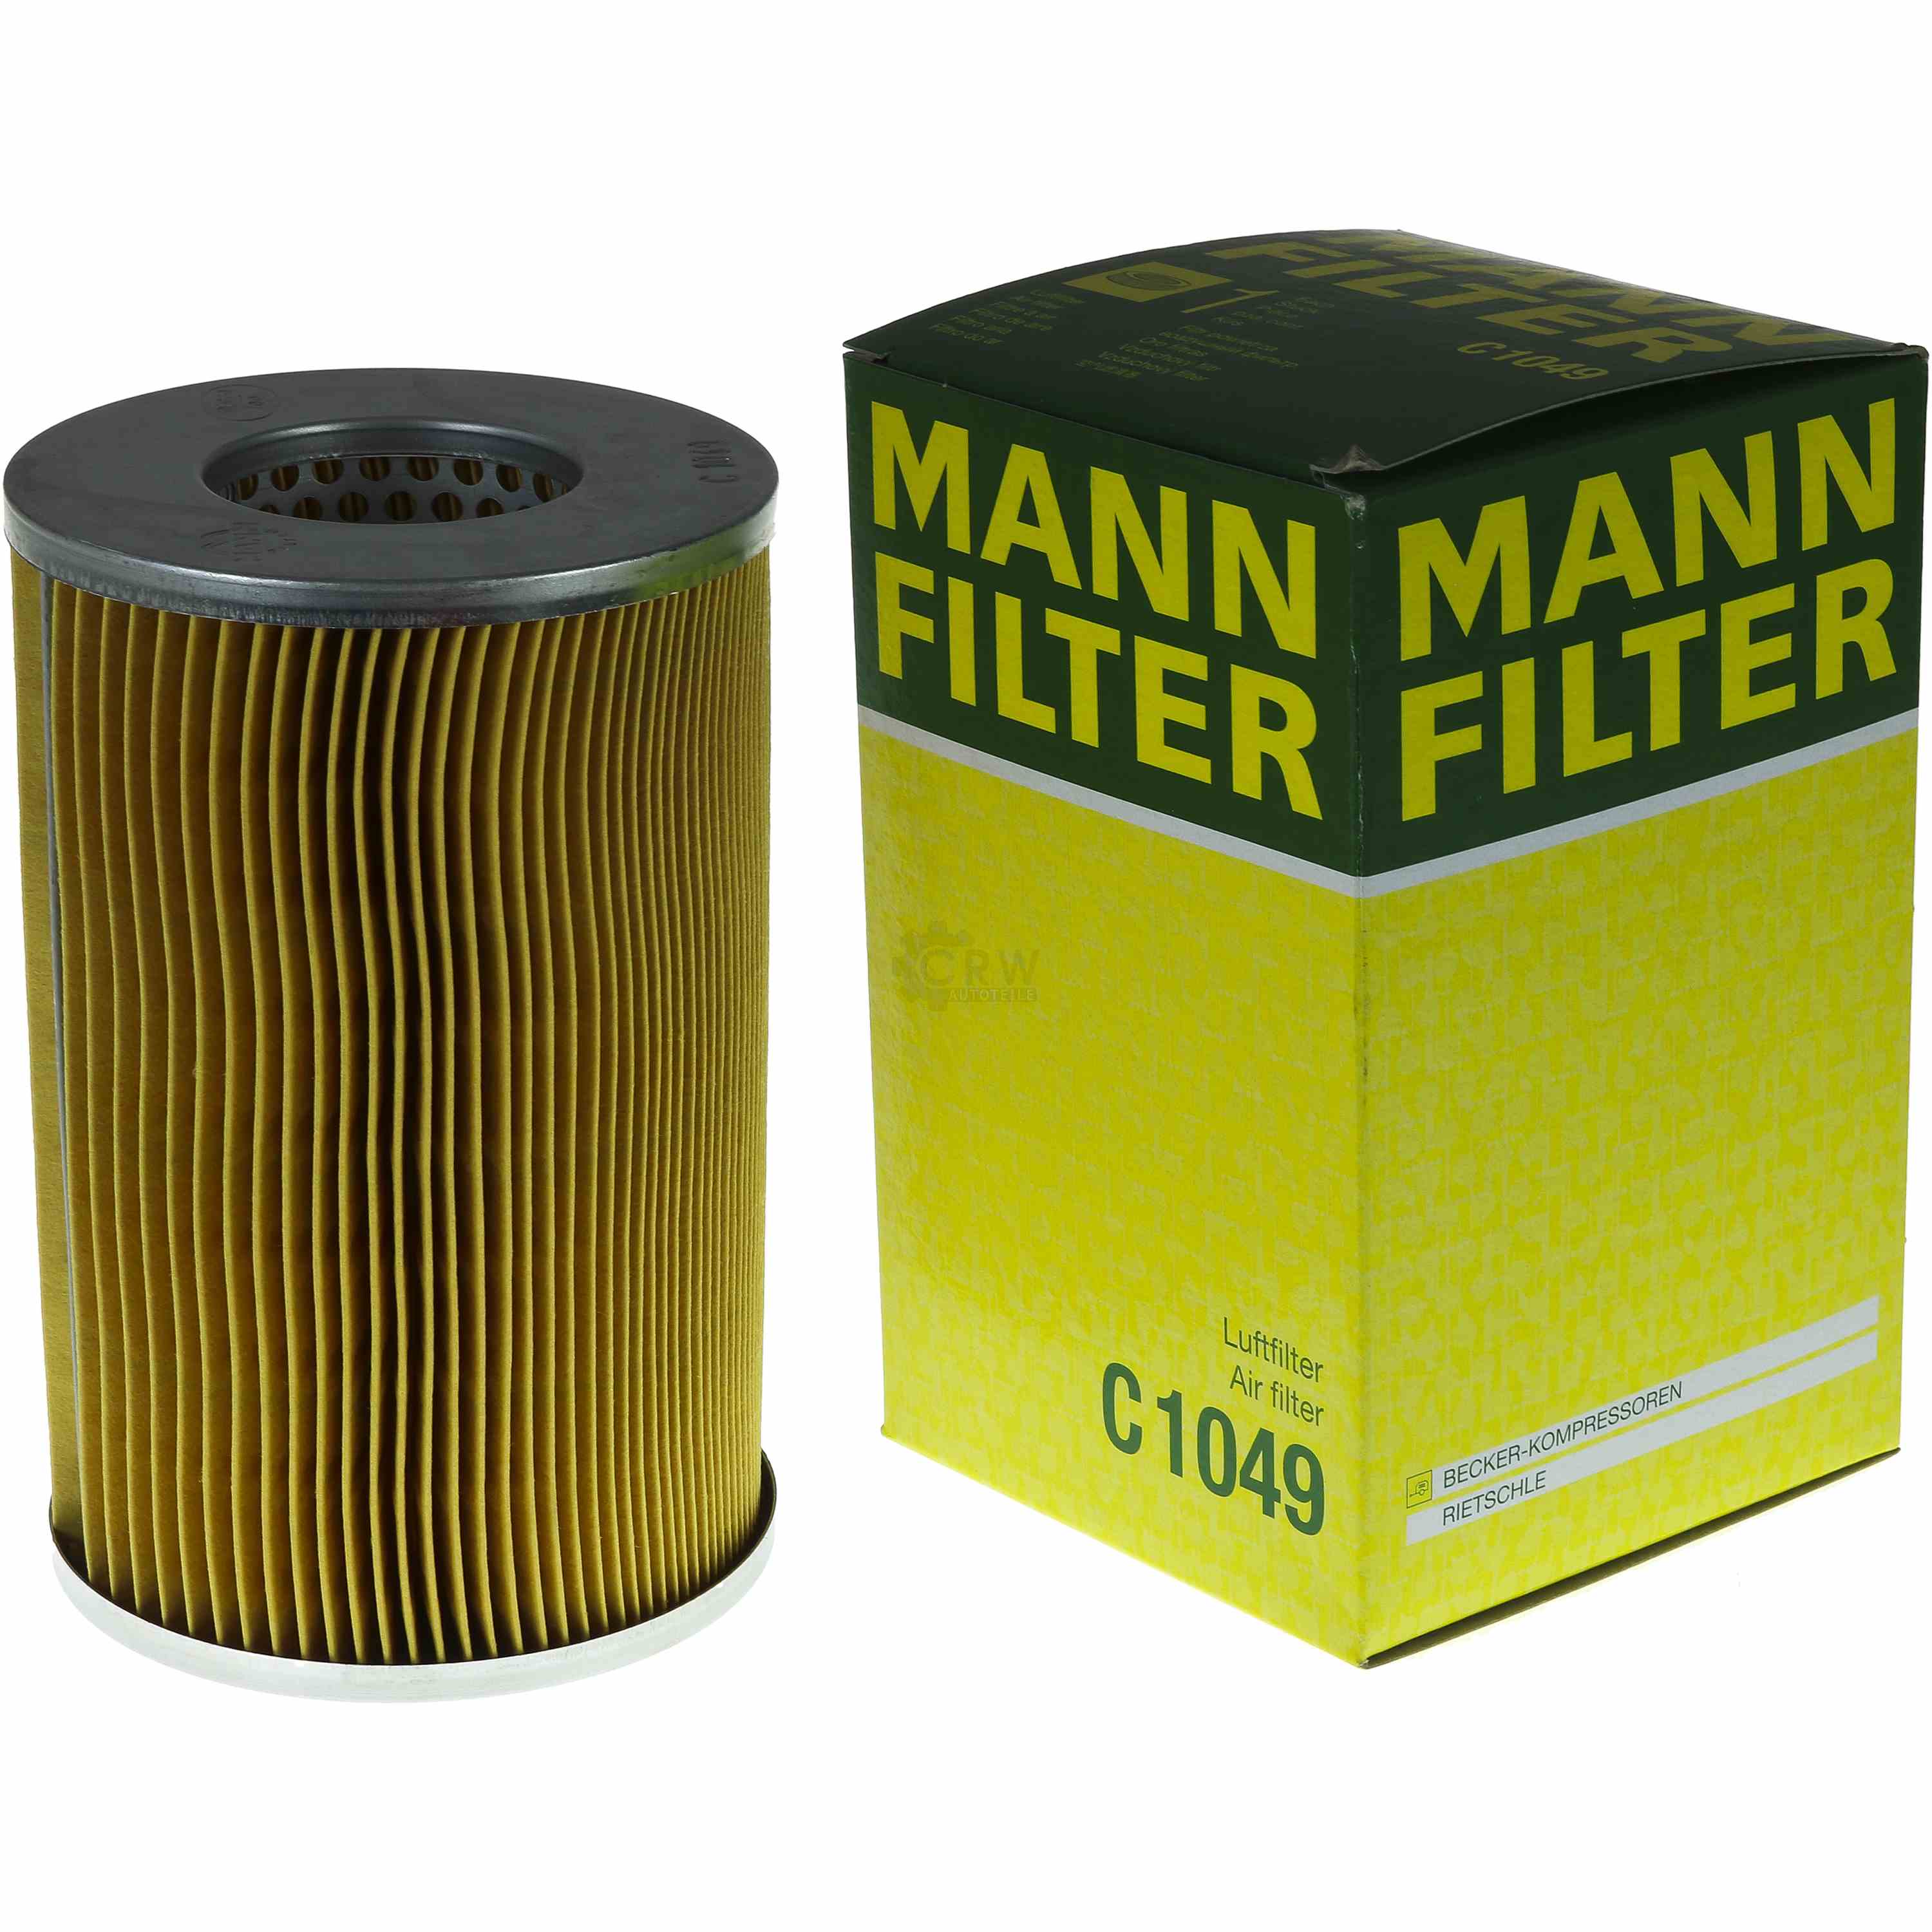 MANN-FILTER Luftfilter C 1049